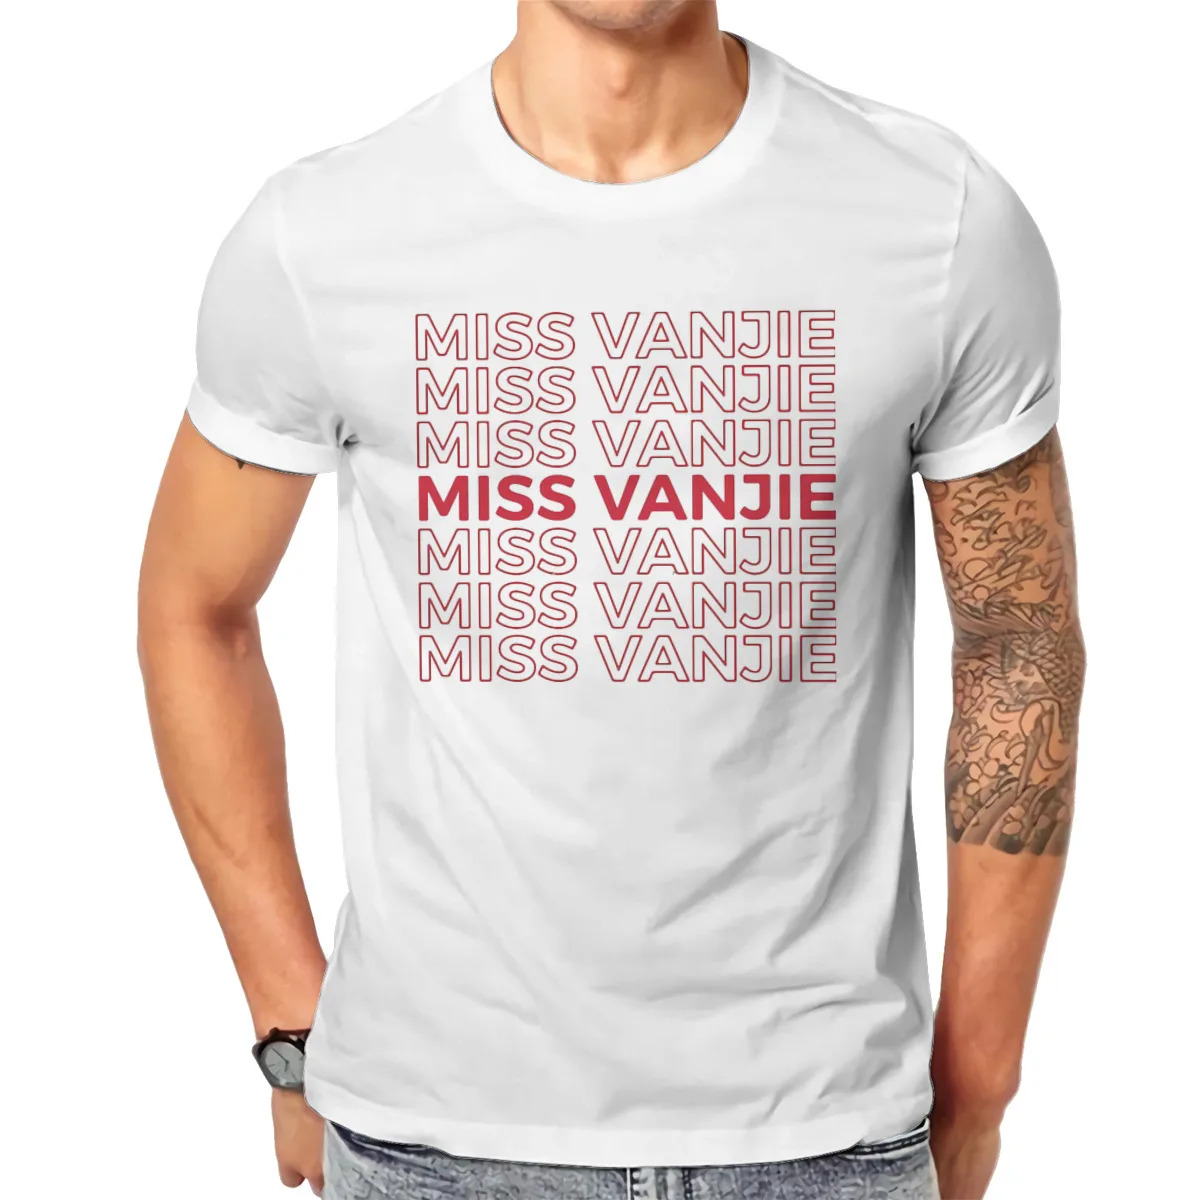 Miss Vanjie Sweatshirt Velour Queens Jumper LGBTQ Pride Gay Masc Bottom Drag Top